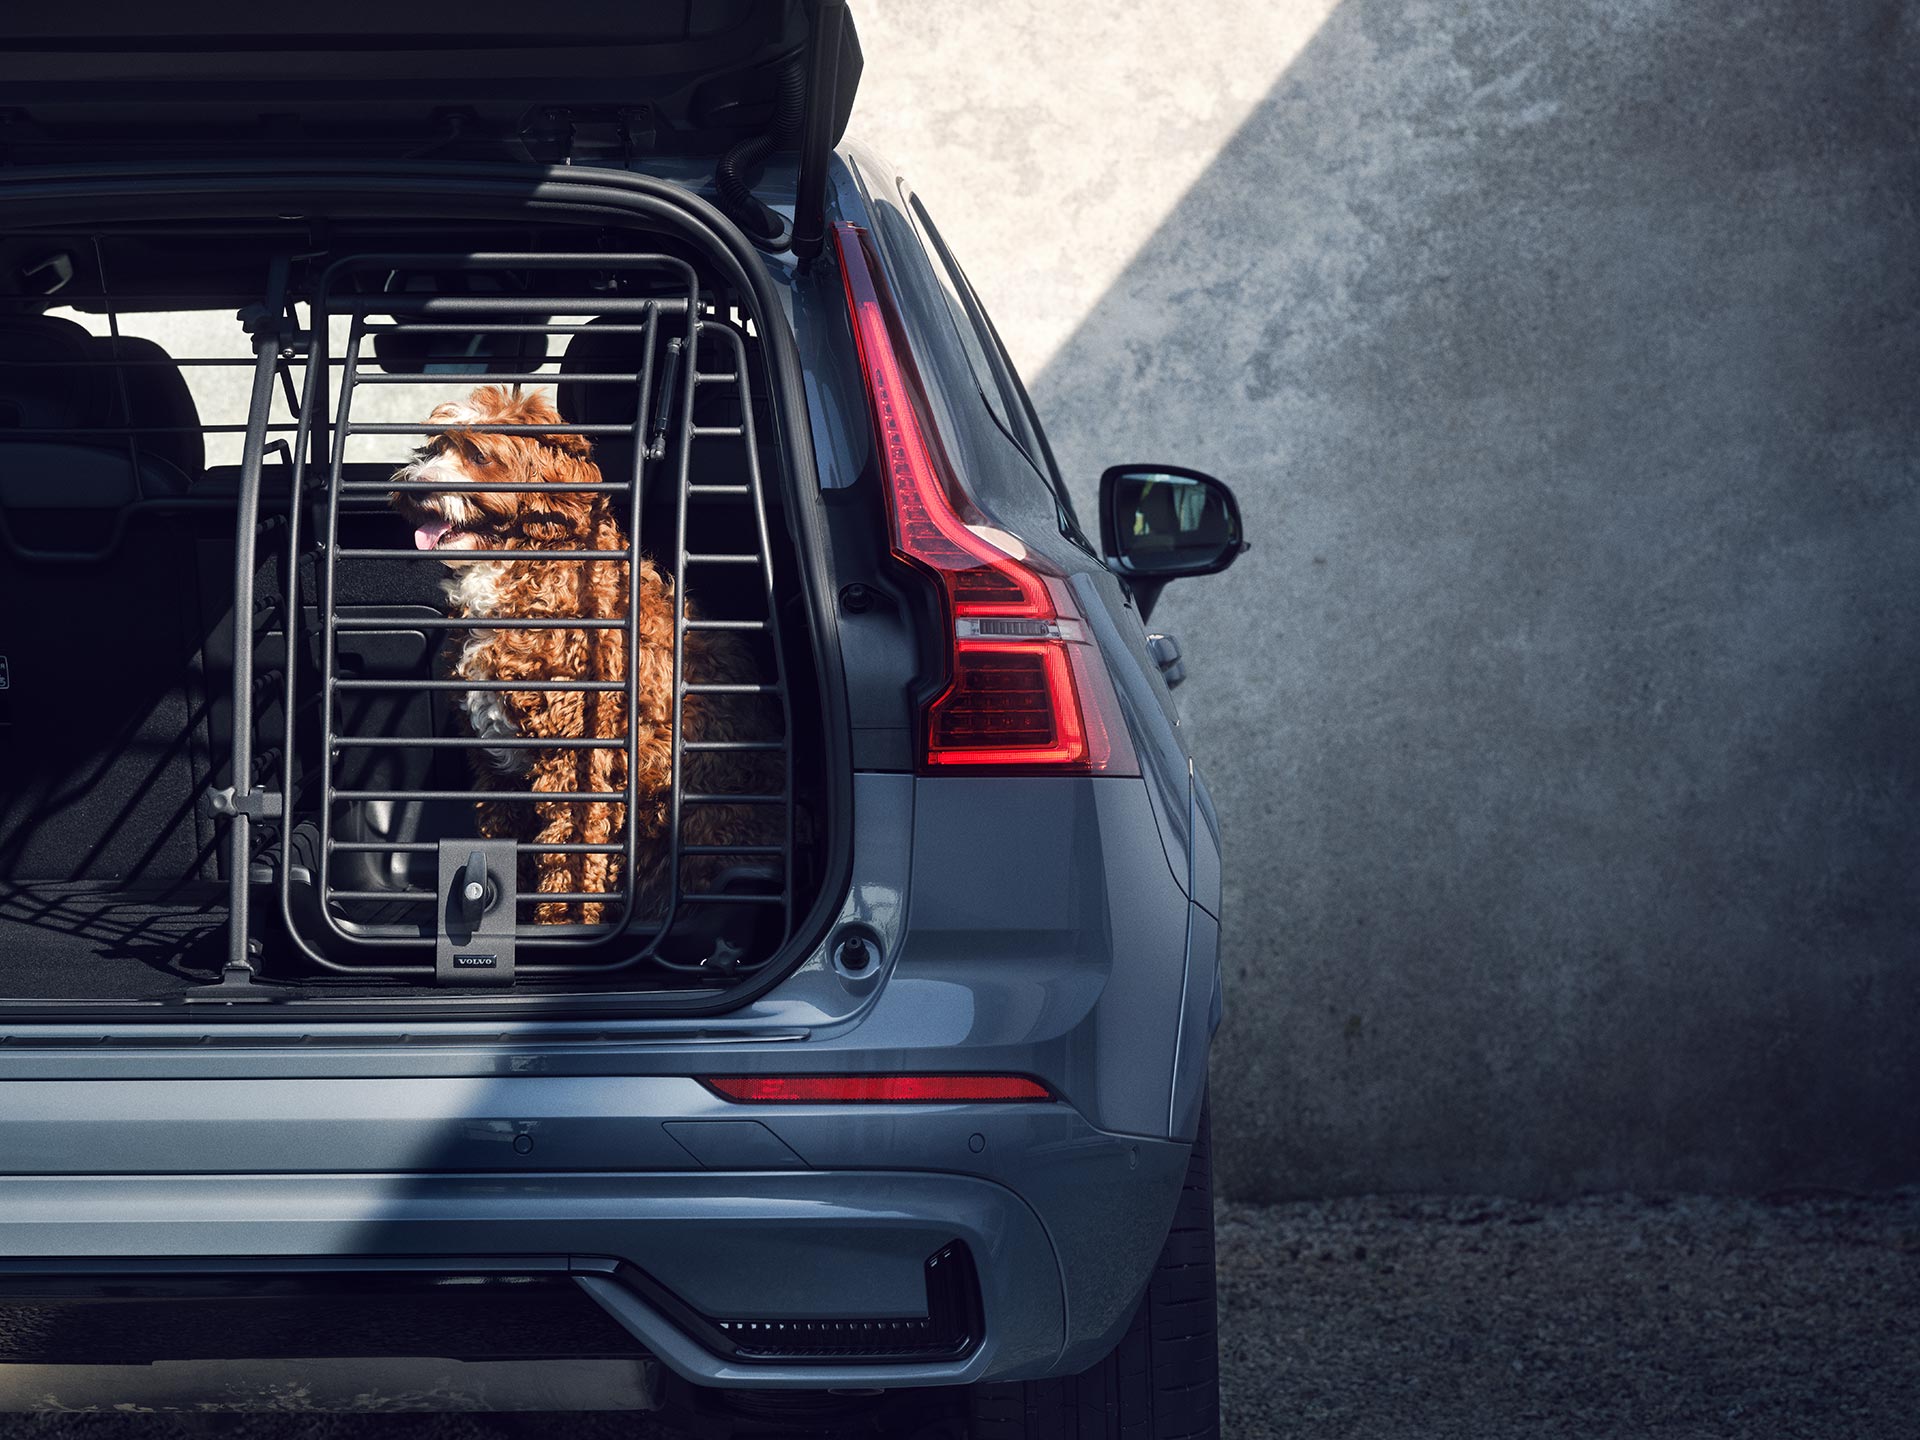 Ein rotbrauner Hund sitzt in einer stabilen Hundebox, einem Volvo Zubehör, das speziell für die Sicherheit und den Komfort von Haustieren auf Reisen entwickelt wurde.